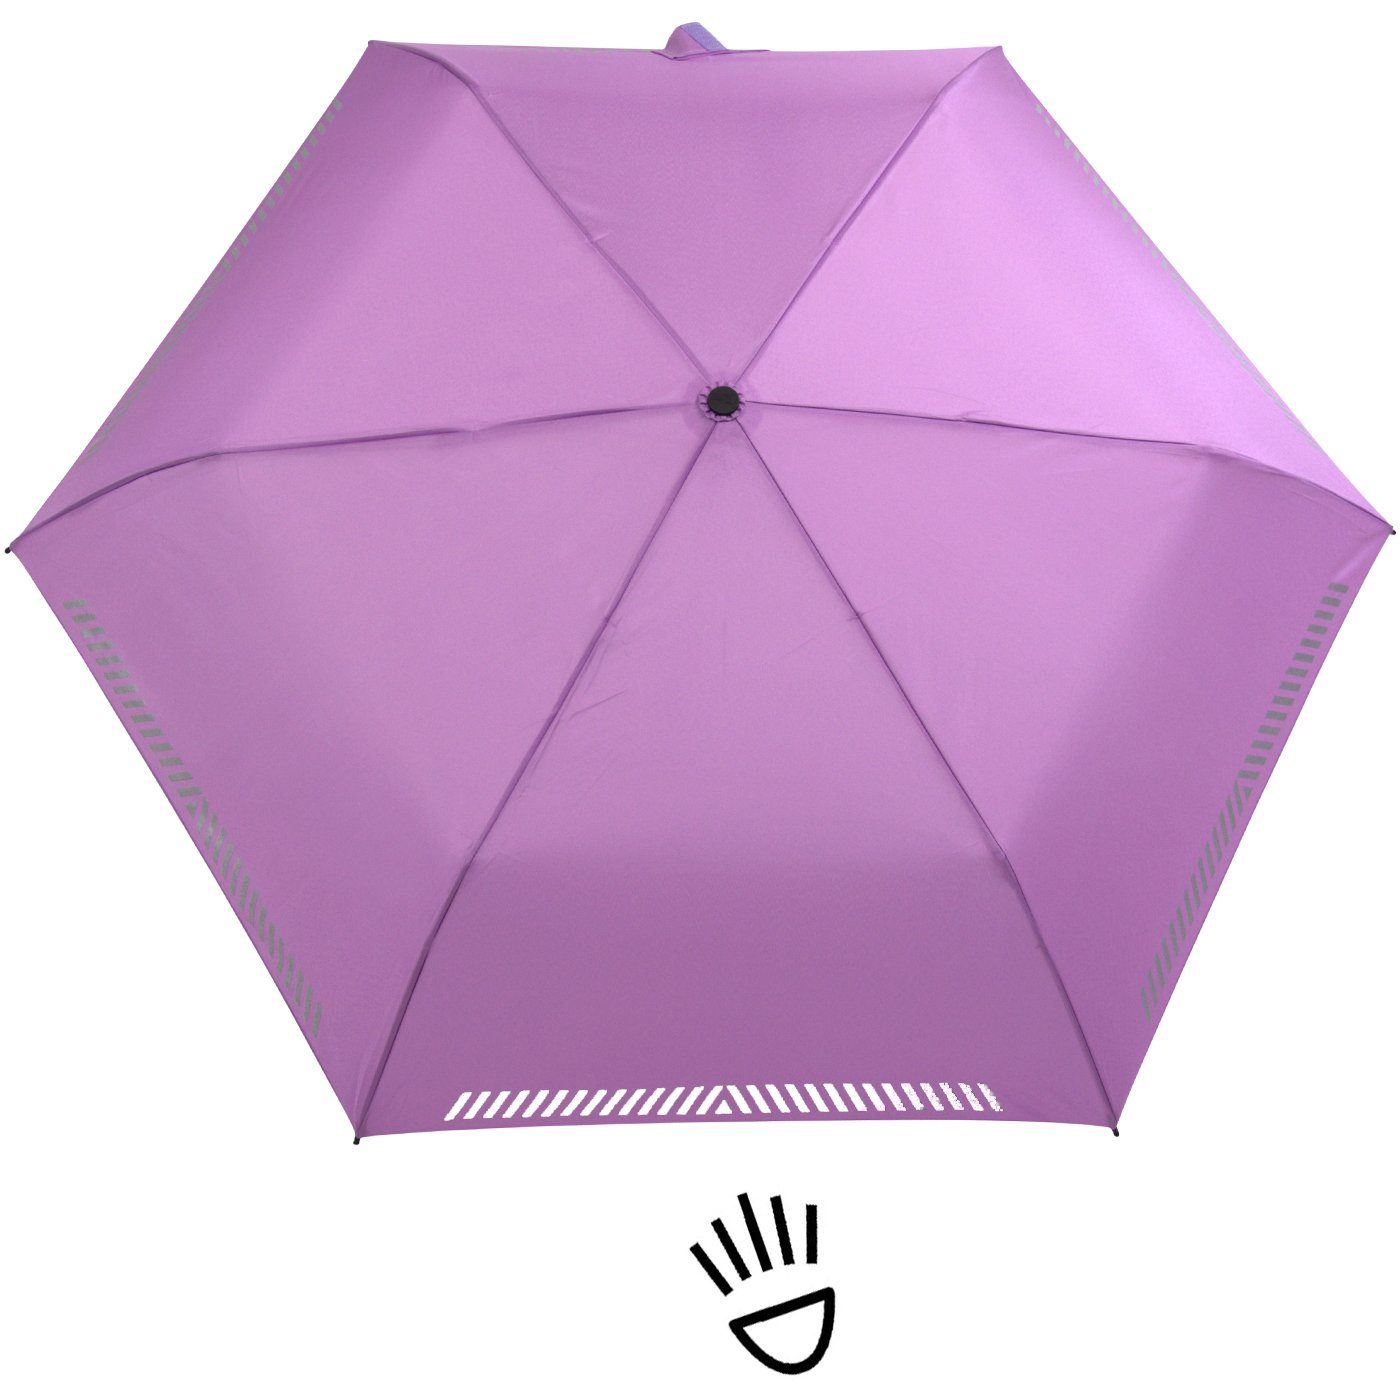 Sicherheit Reflex-Streifen - Kinderschirm hell-lila Auf-Zu-Automatik, reflektierend, iX-brella durch Taschenregenschirm mit